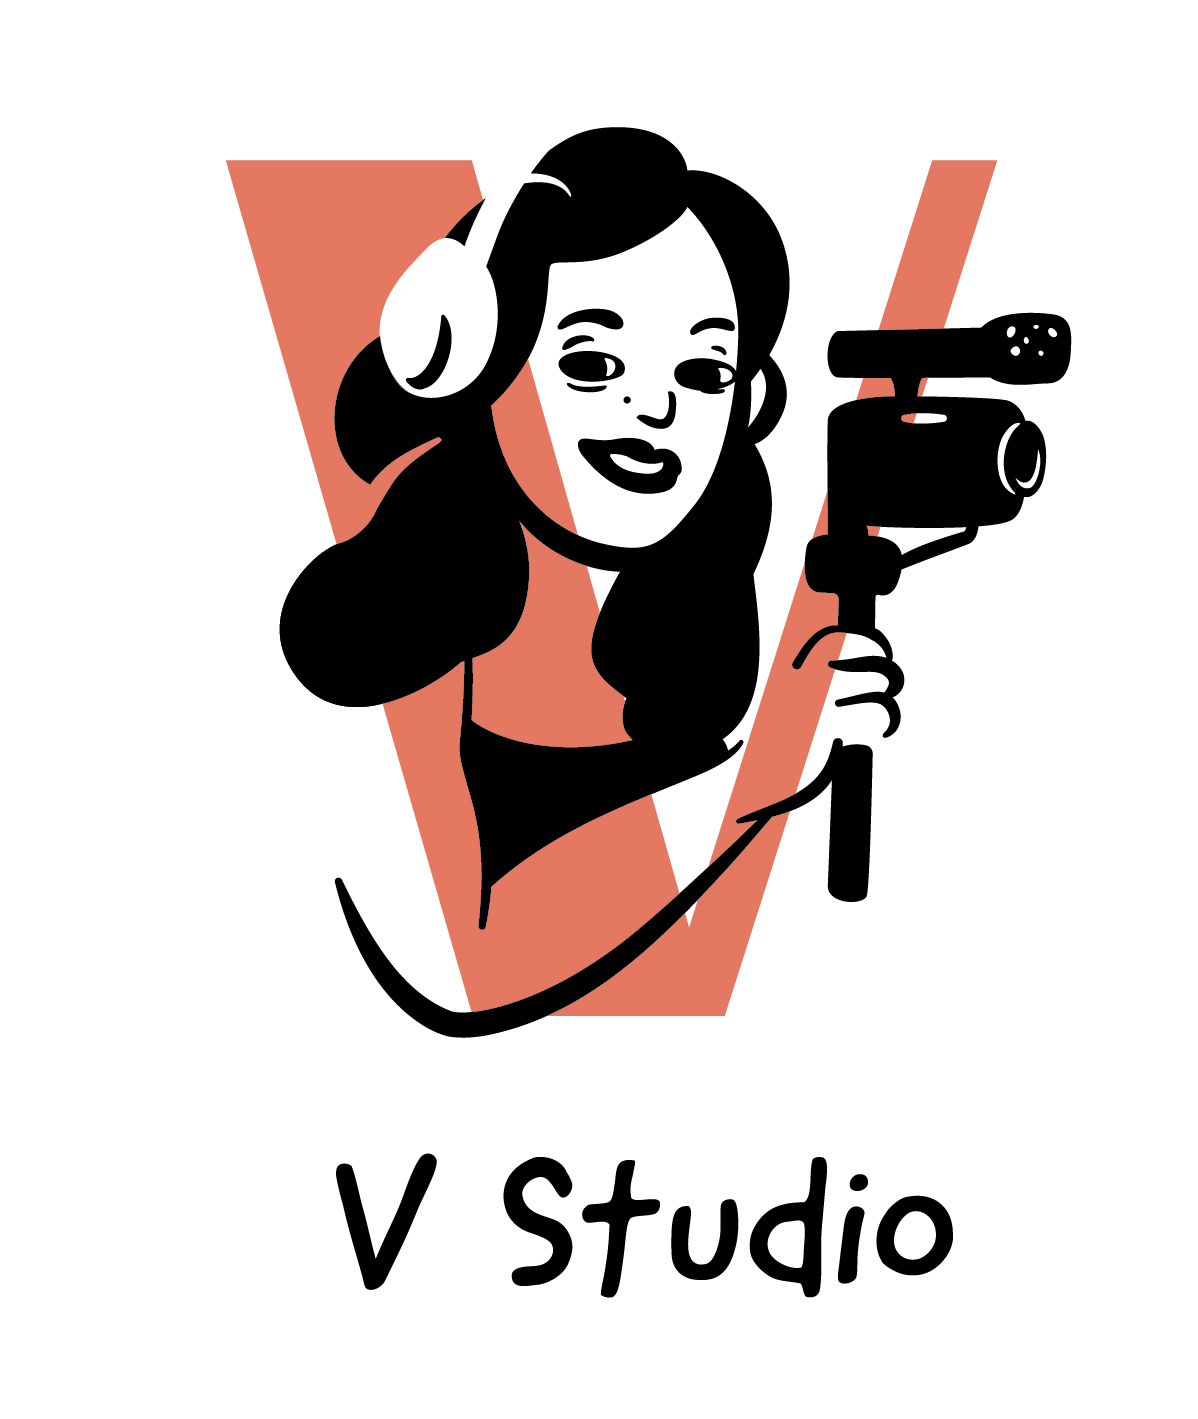 V Studio logo